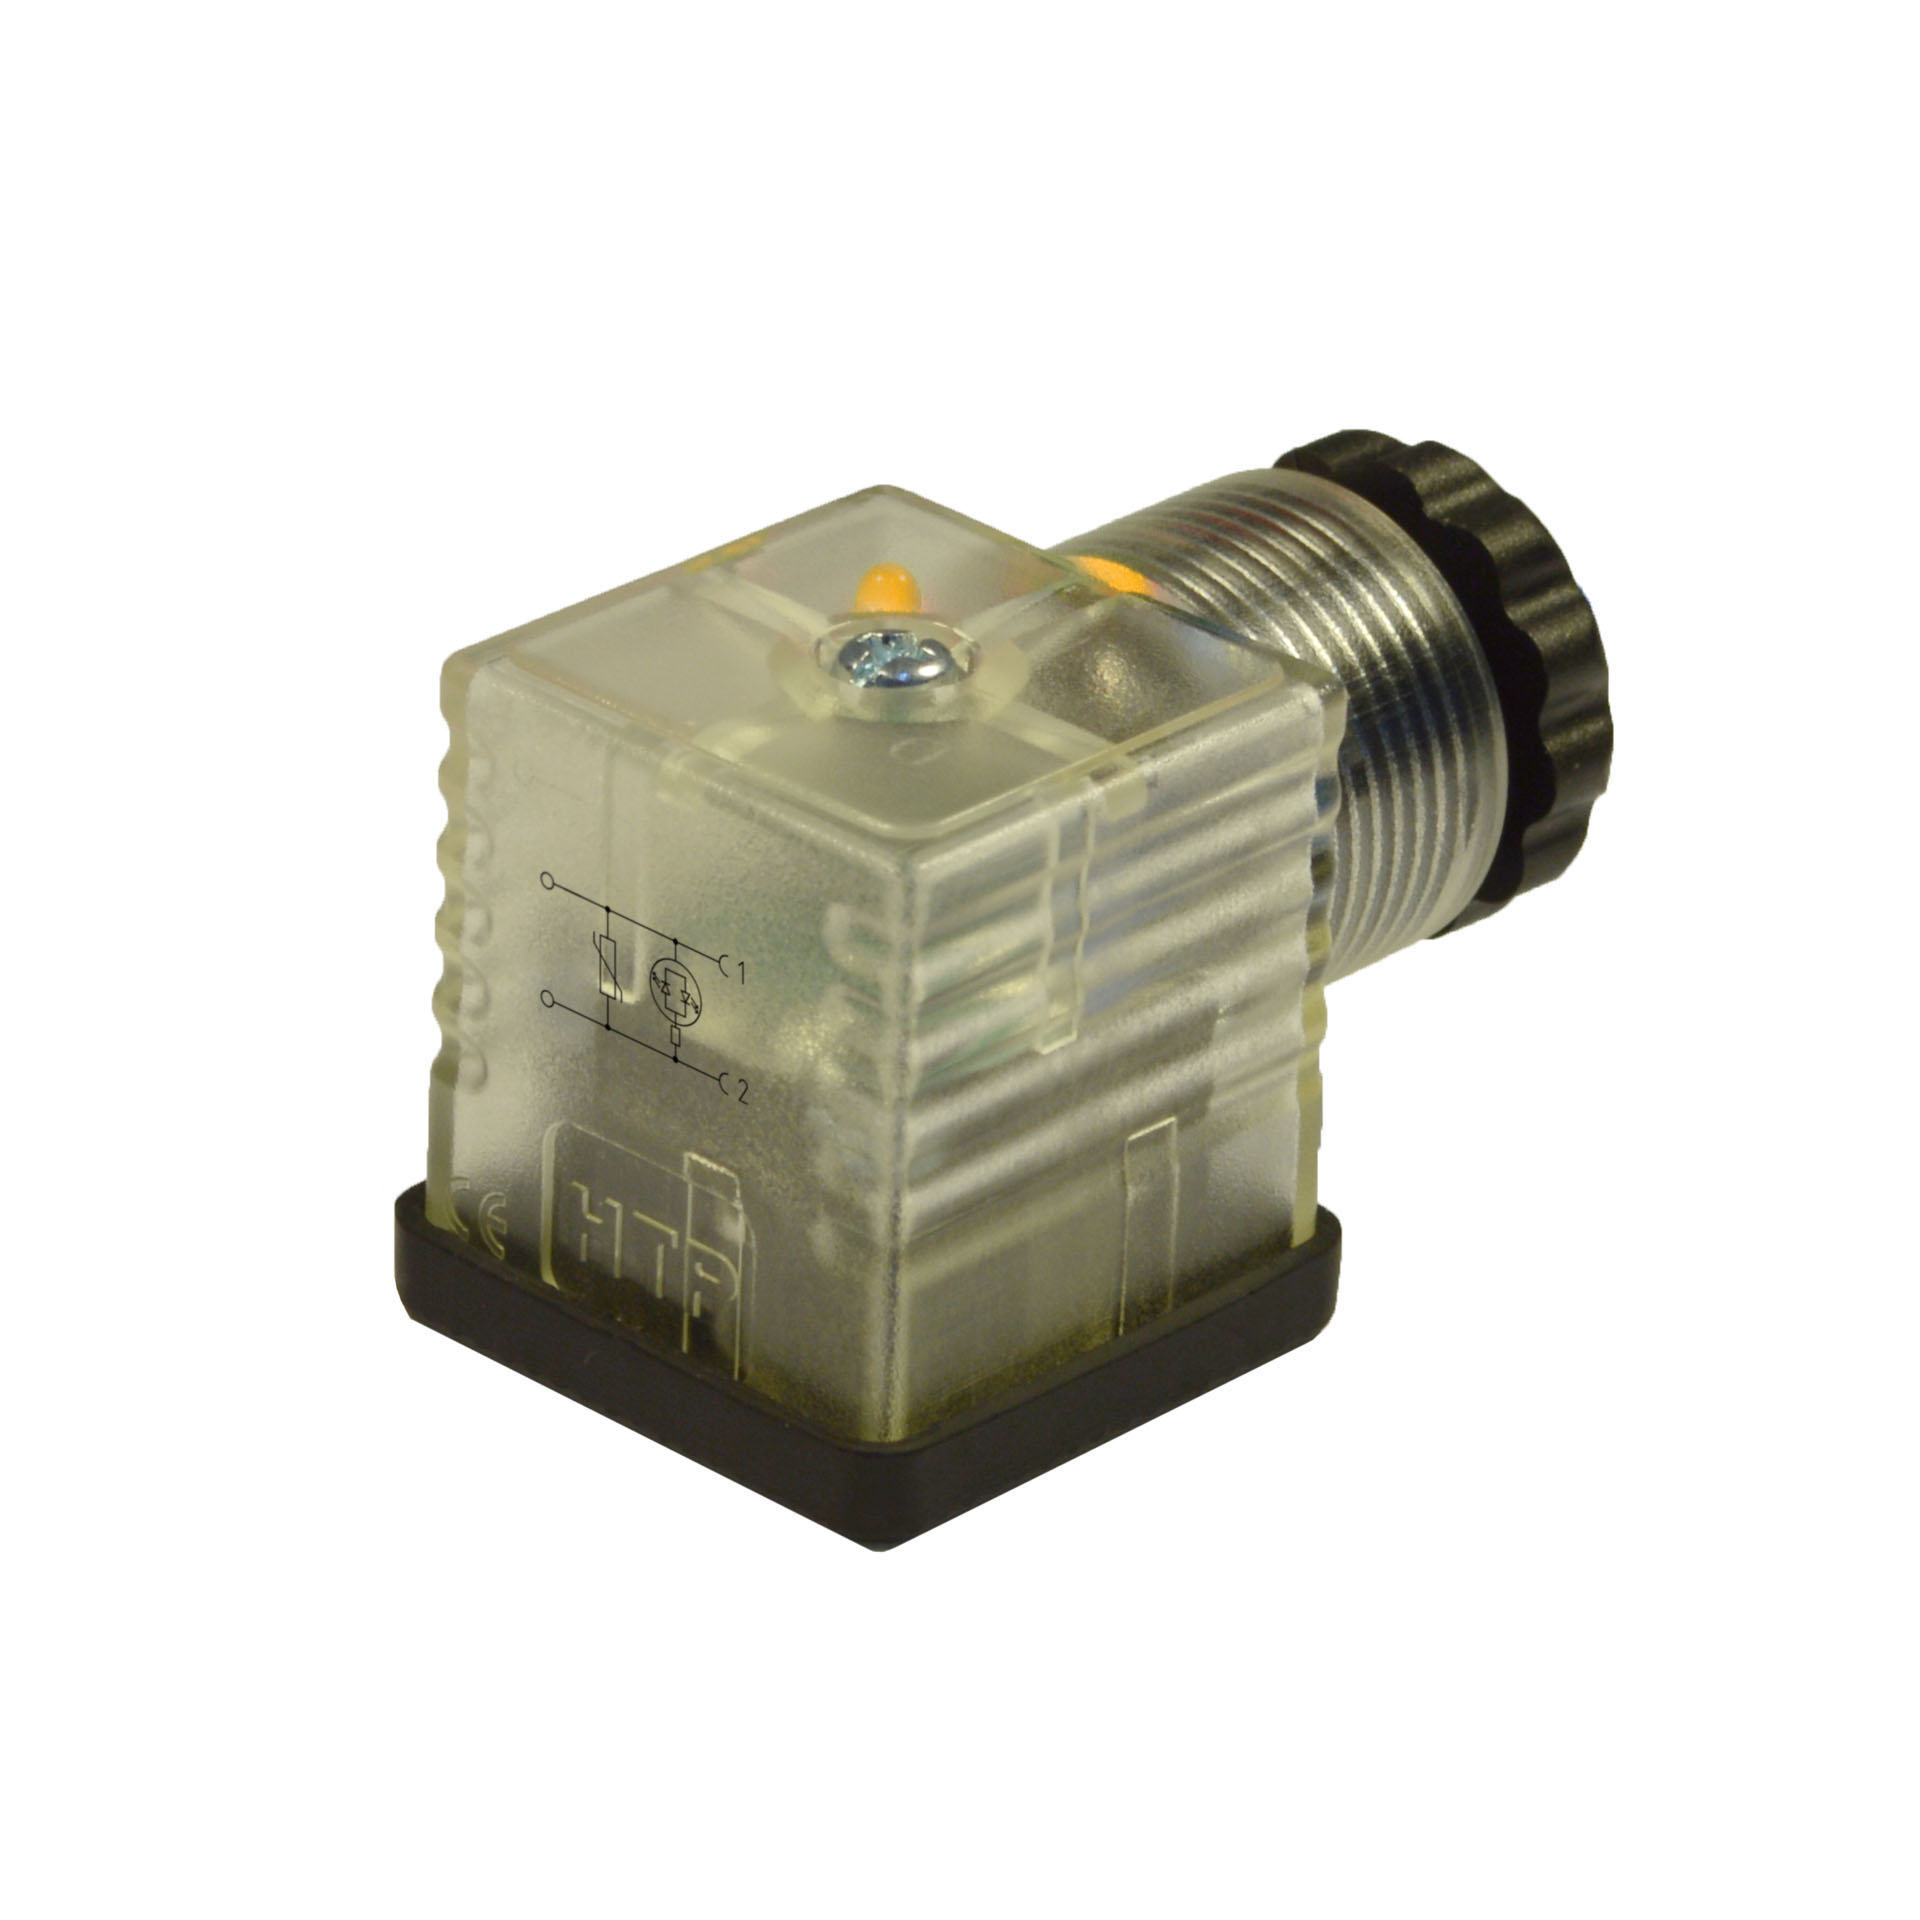 EN175301-803/A a cablare,2p+T(h.12),LED giallo+vdr,24VAC/DC,PG9/11unif.